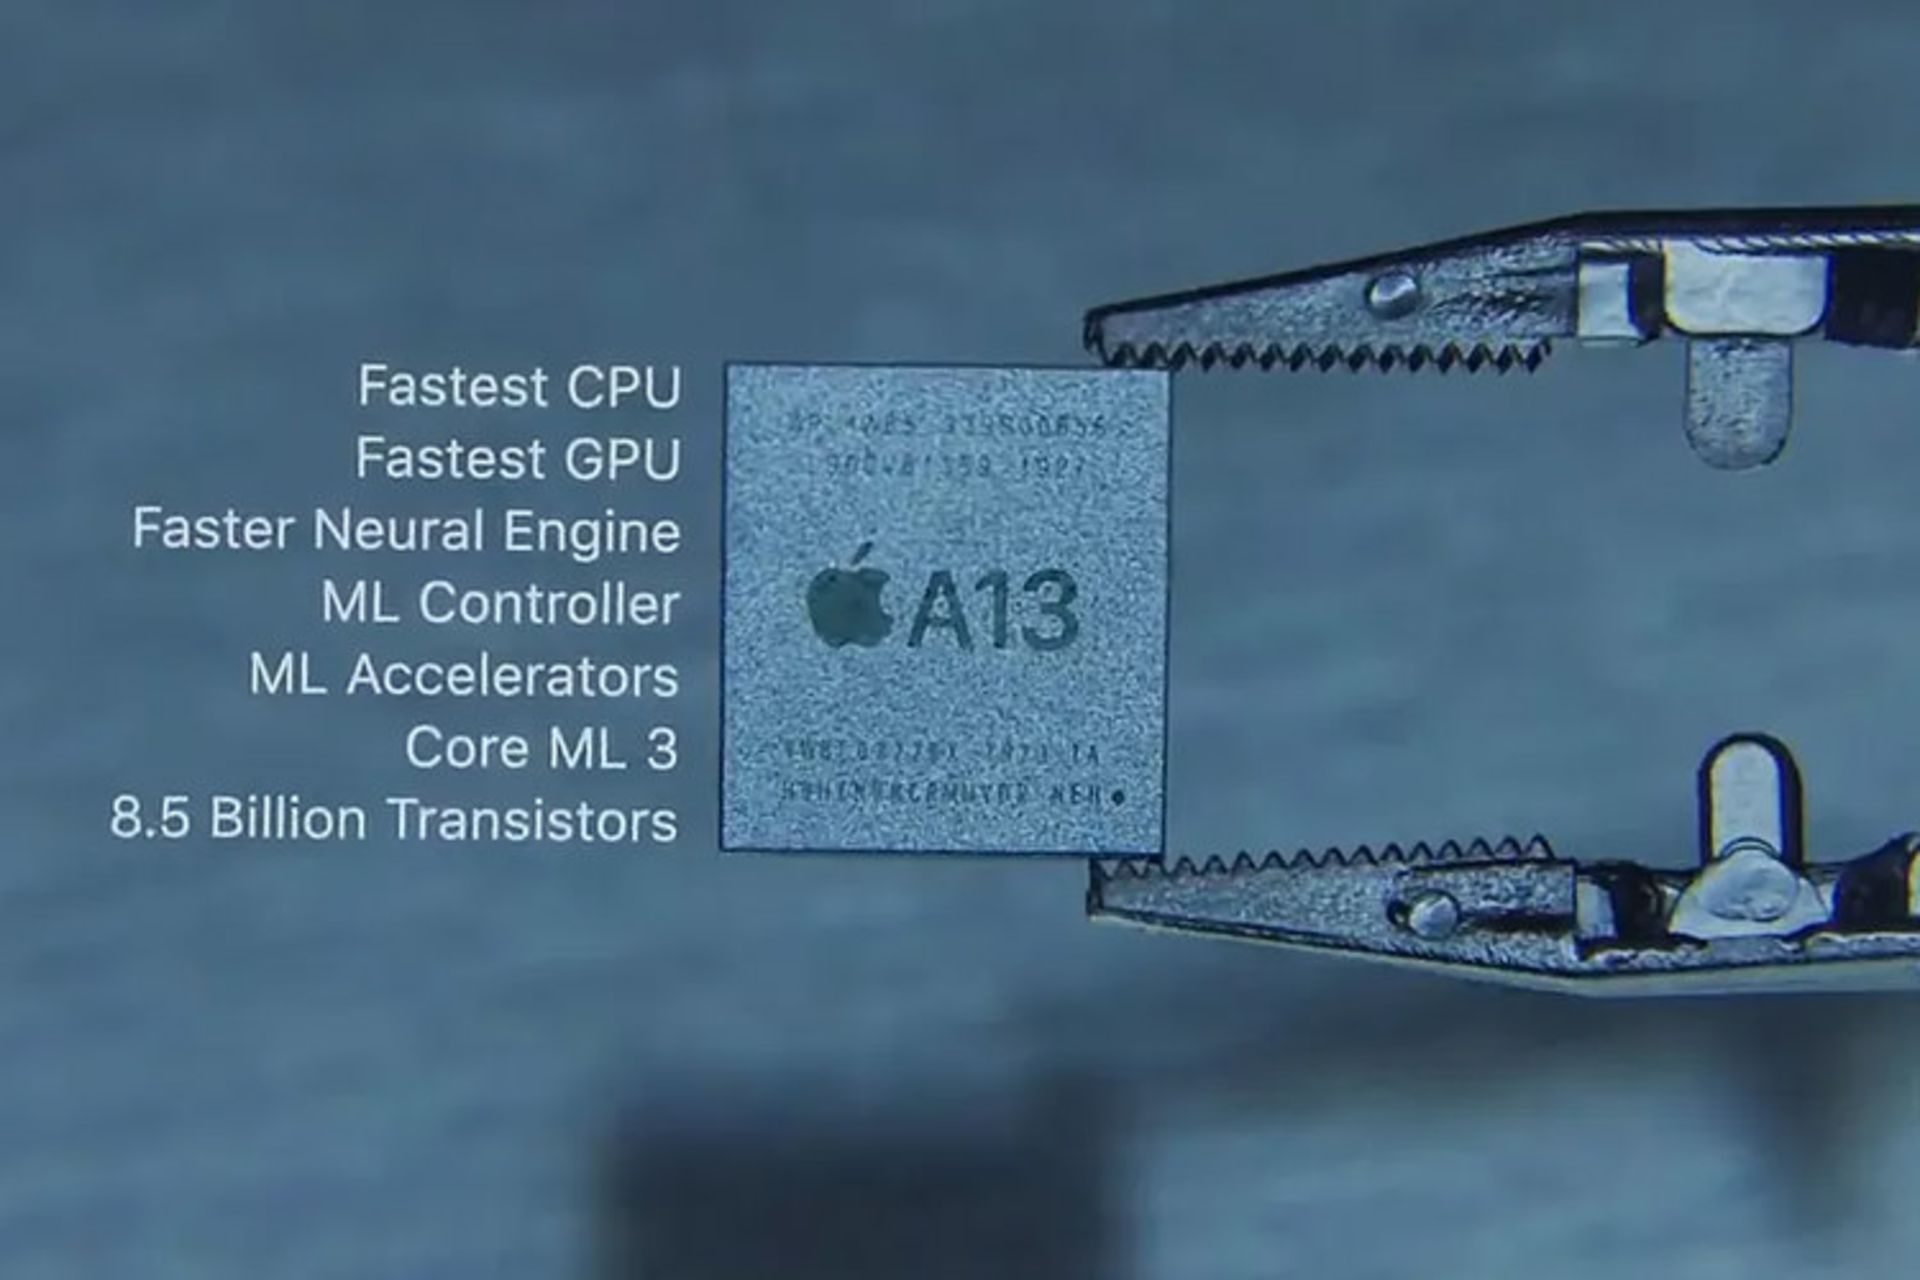 مرجع متخصصين ايران تراشه A13 بايونيك اپل / apple a13 bionic chip